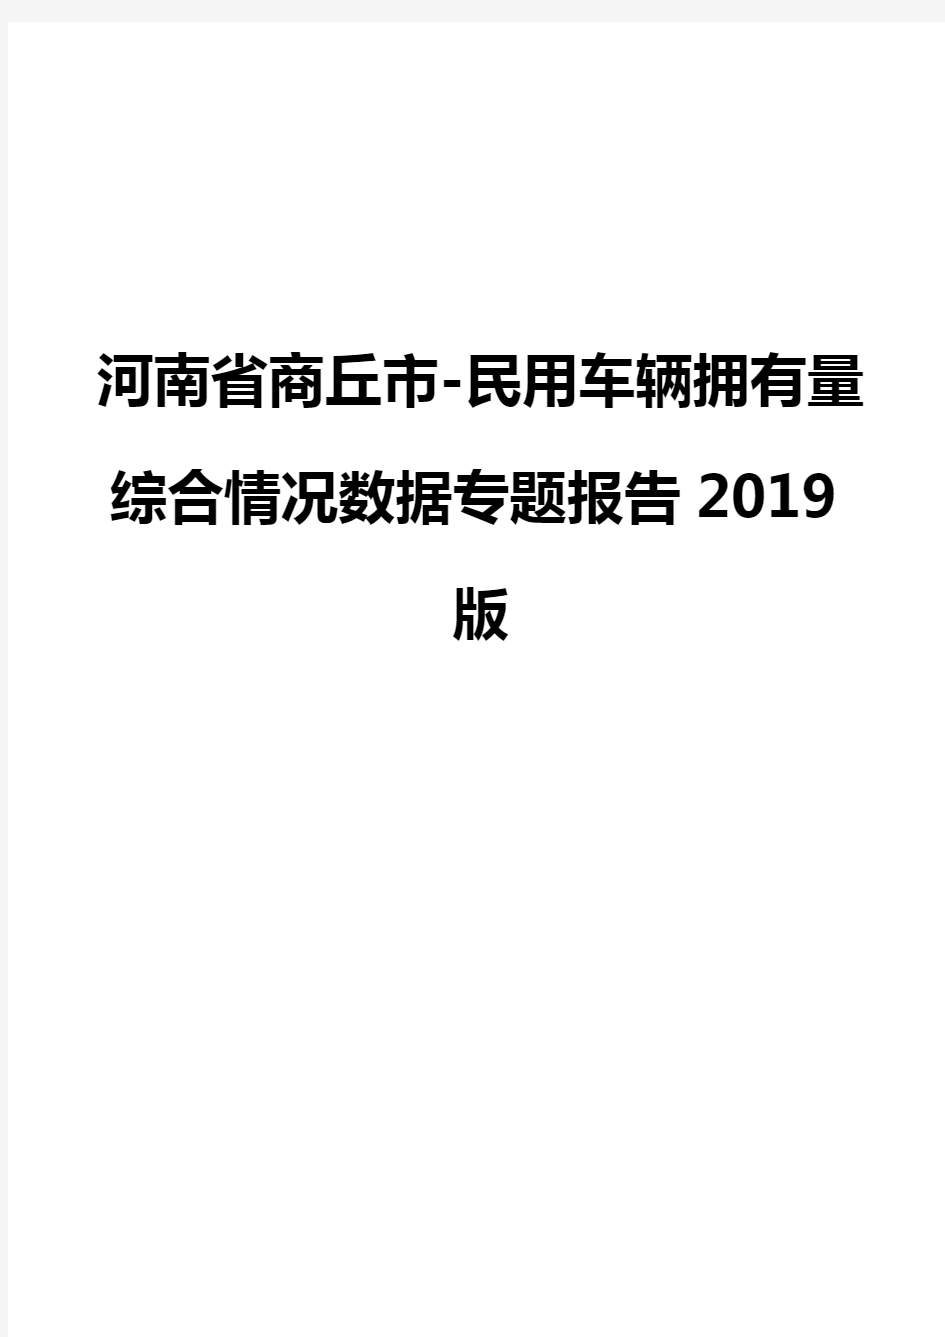 河南省商丘市-民用车辆拥有量综合情况数据专题报告2019版